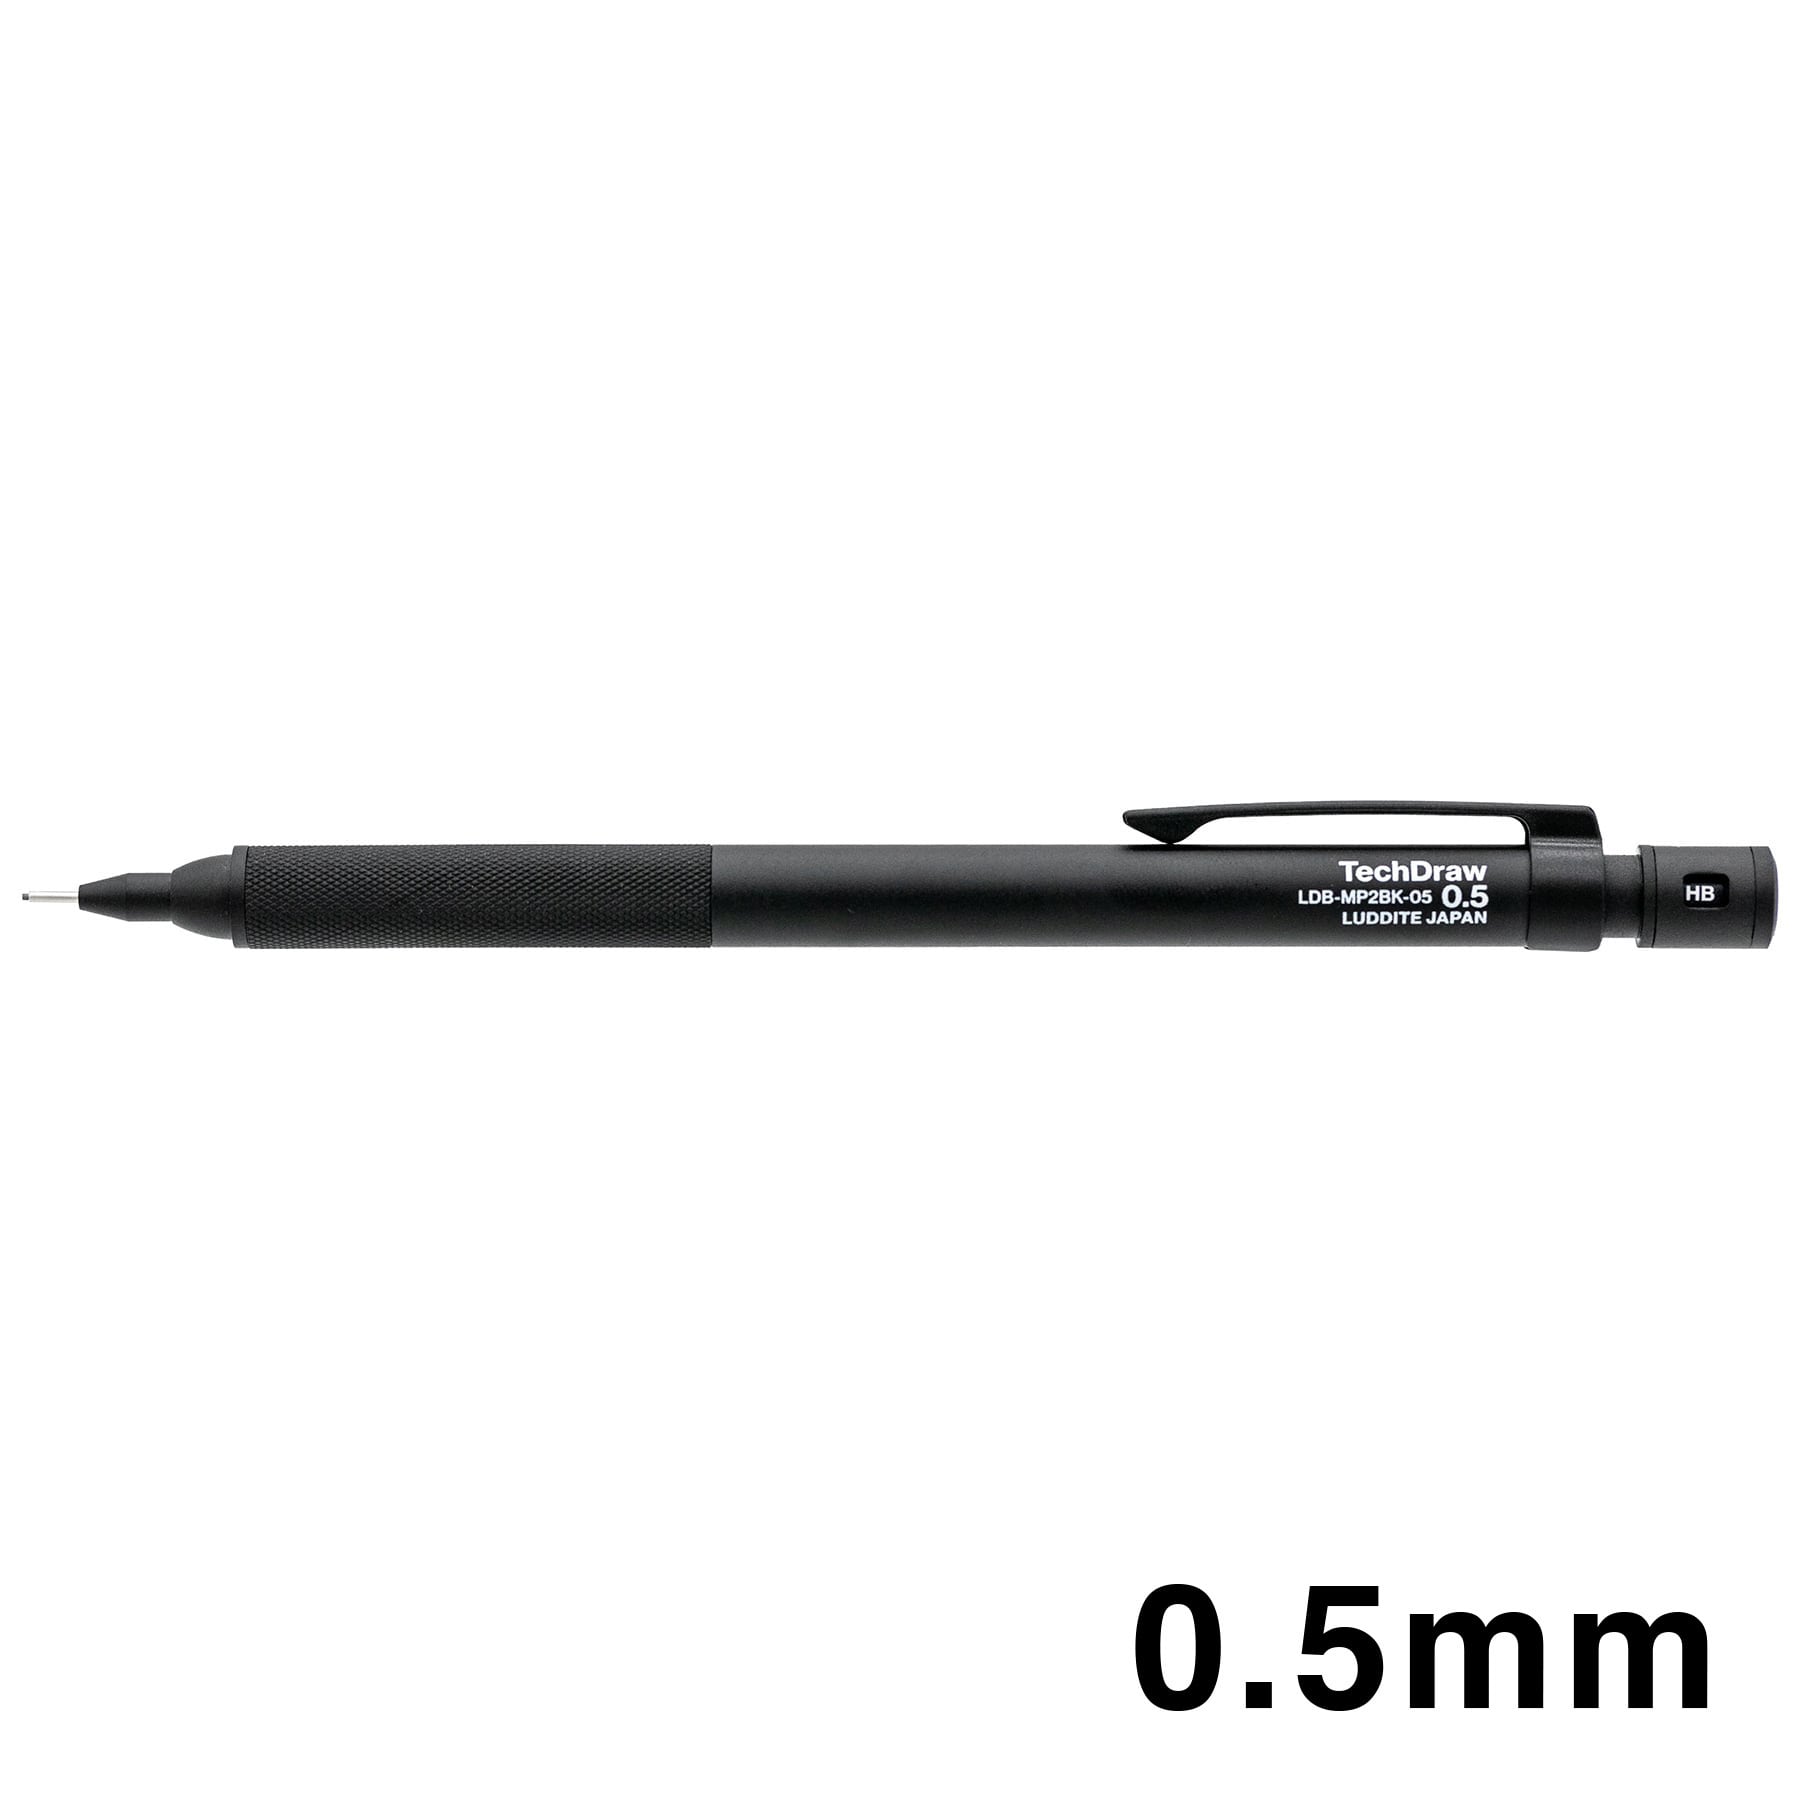 LUDDITE/ラダイト】TechDraw2 製図用シャープペンシル (0.5mm/ブラック) 590Co.